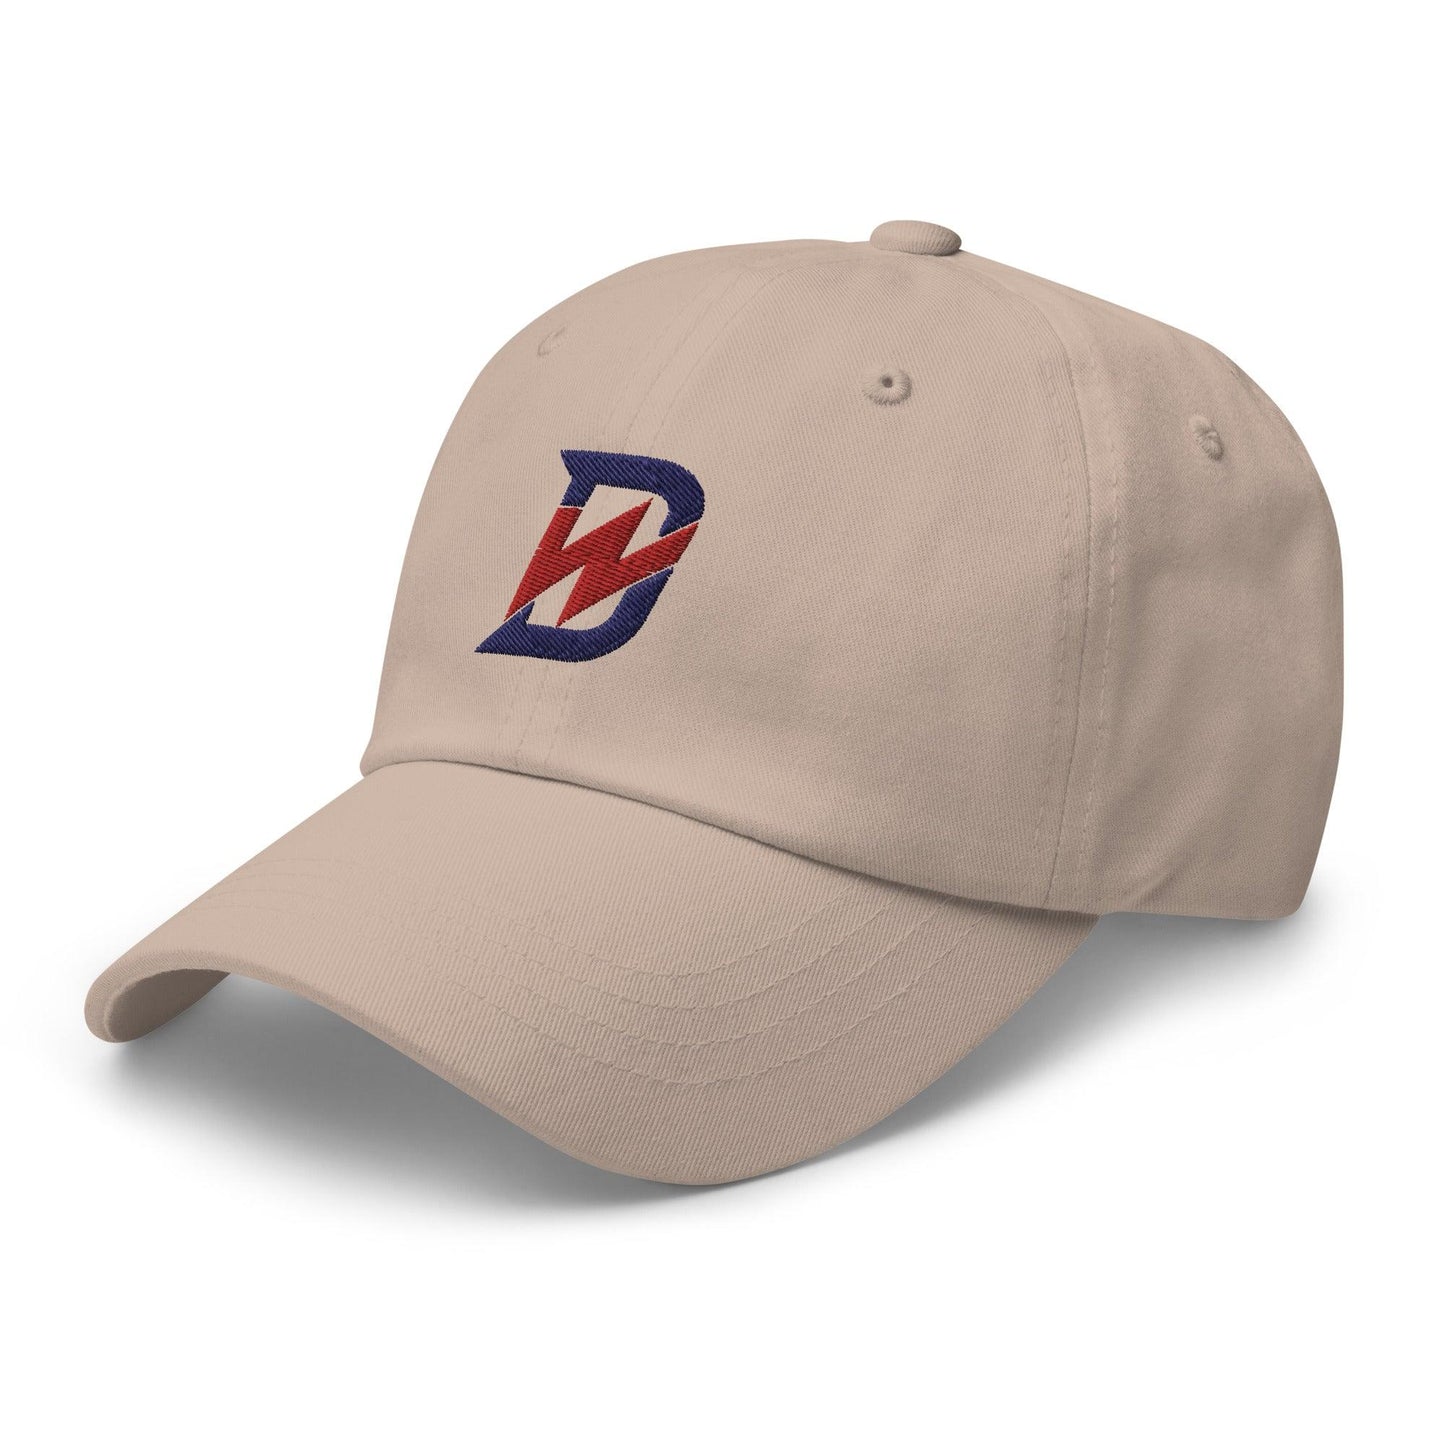 Drew Waters "DW" hat - Fan Arch